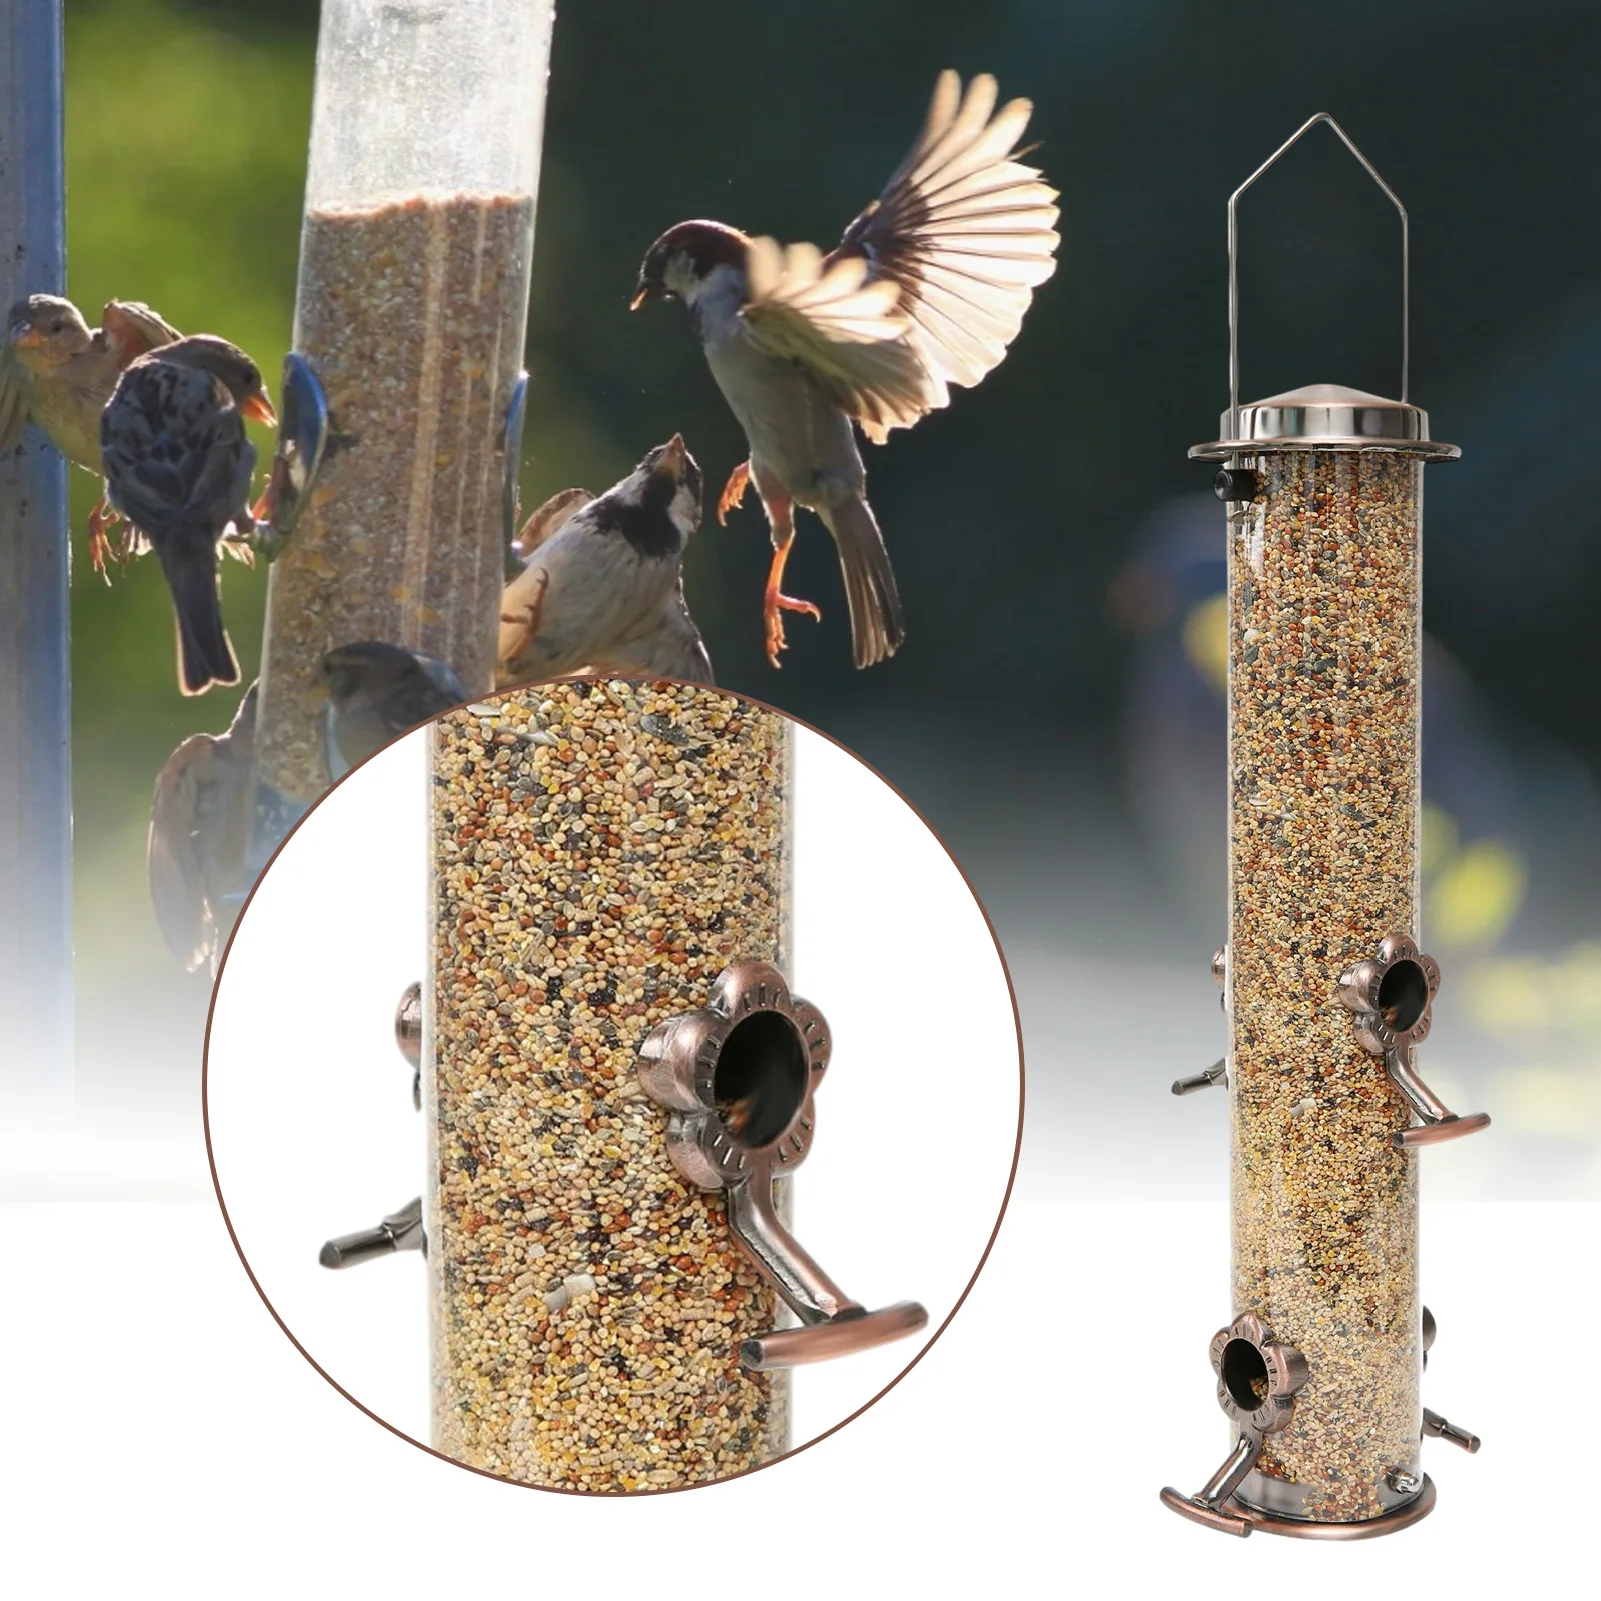 

Hanging Type Outdoor Plastic Pet Wild Bird Metal Feeder Hanging Feeders Viewing Window For Garden Yard Decoration Bird Supplies